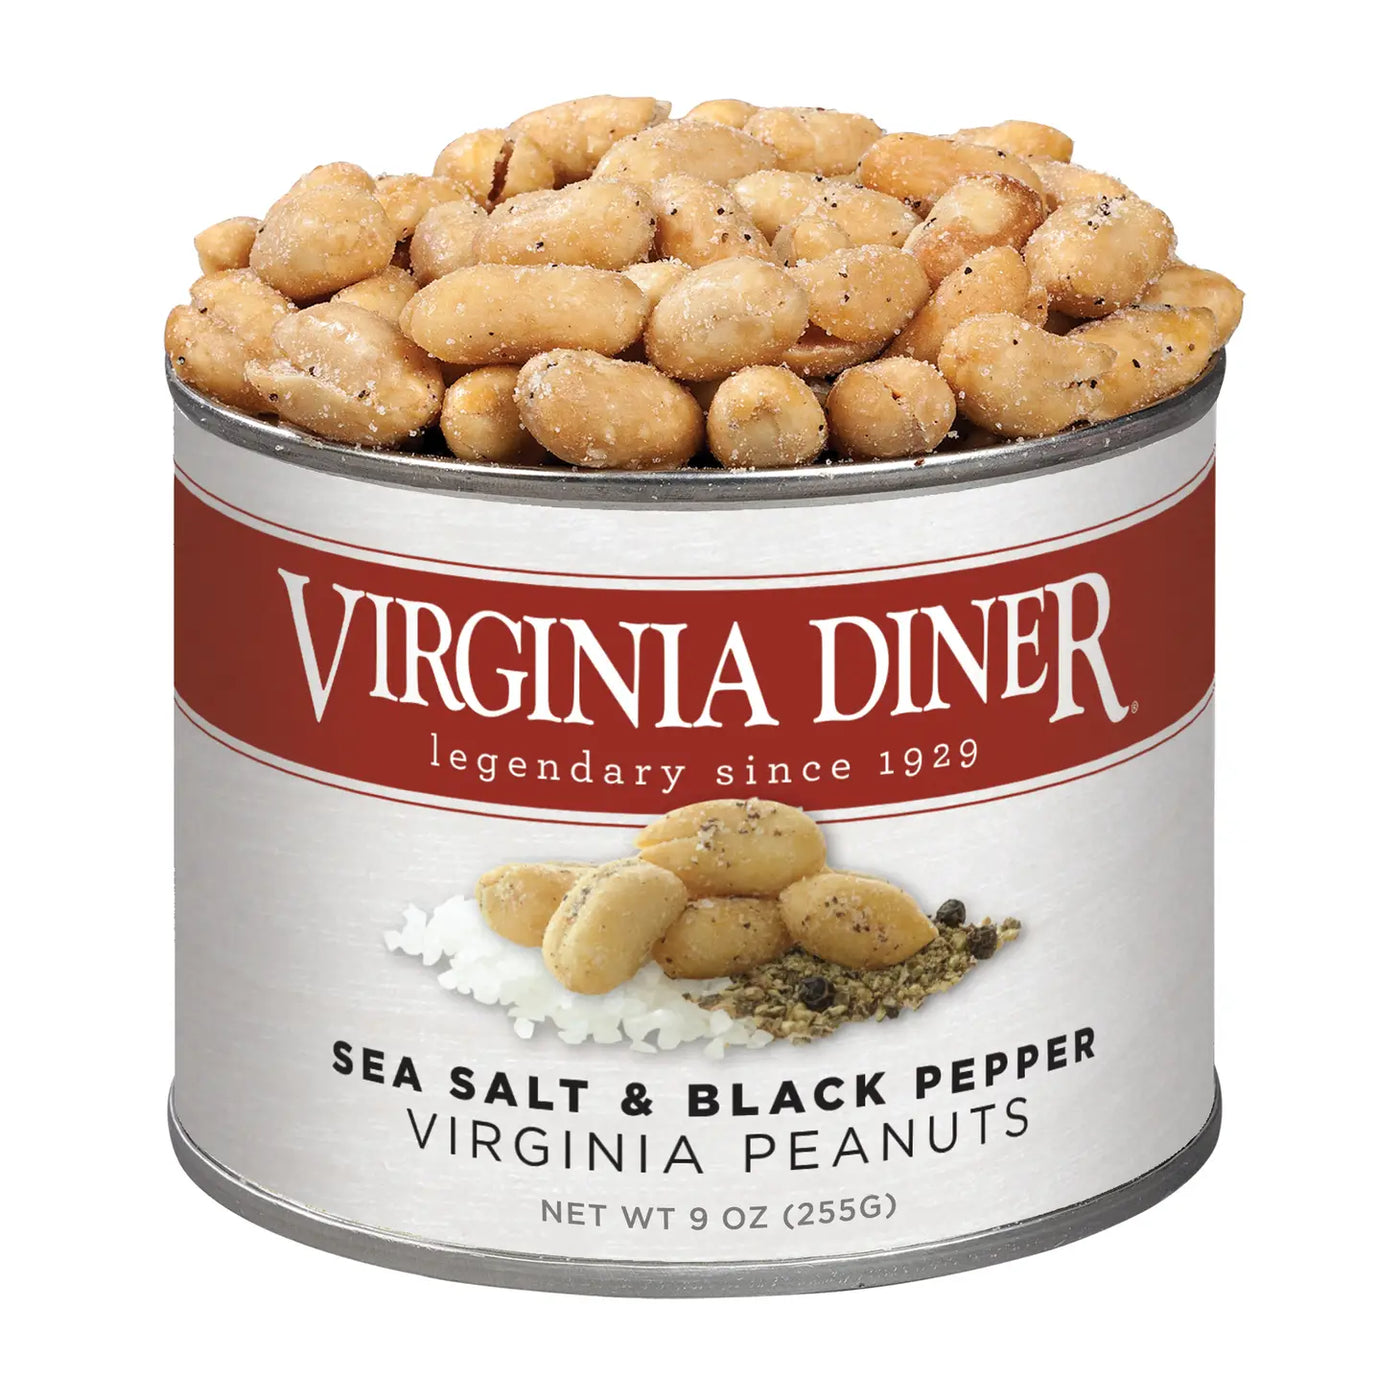 Sea Salt & Black Pepper Peanuts